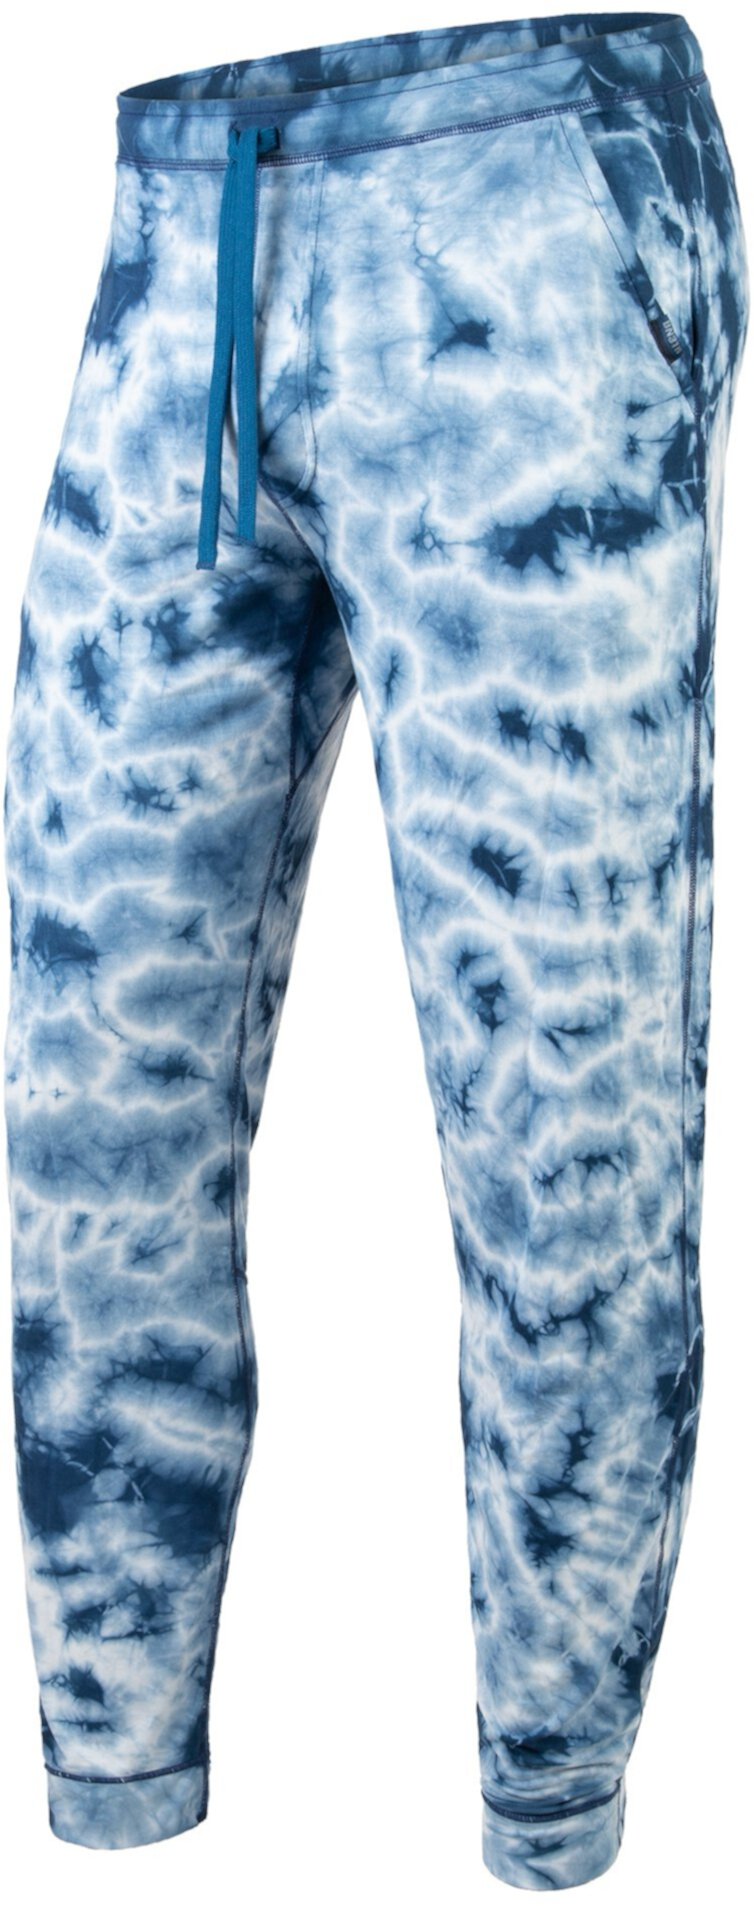 Пижамные длинные брюки BN3TH